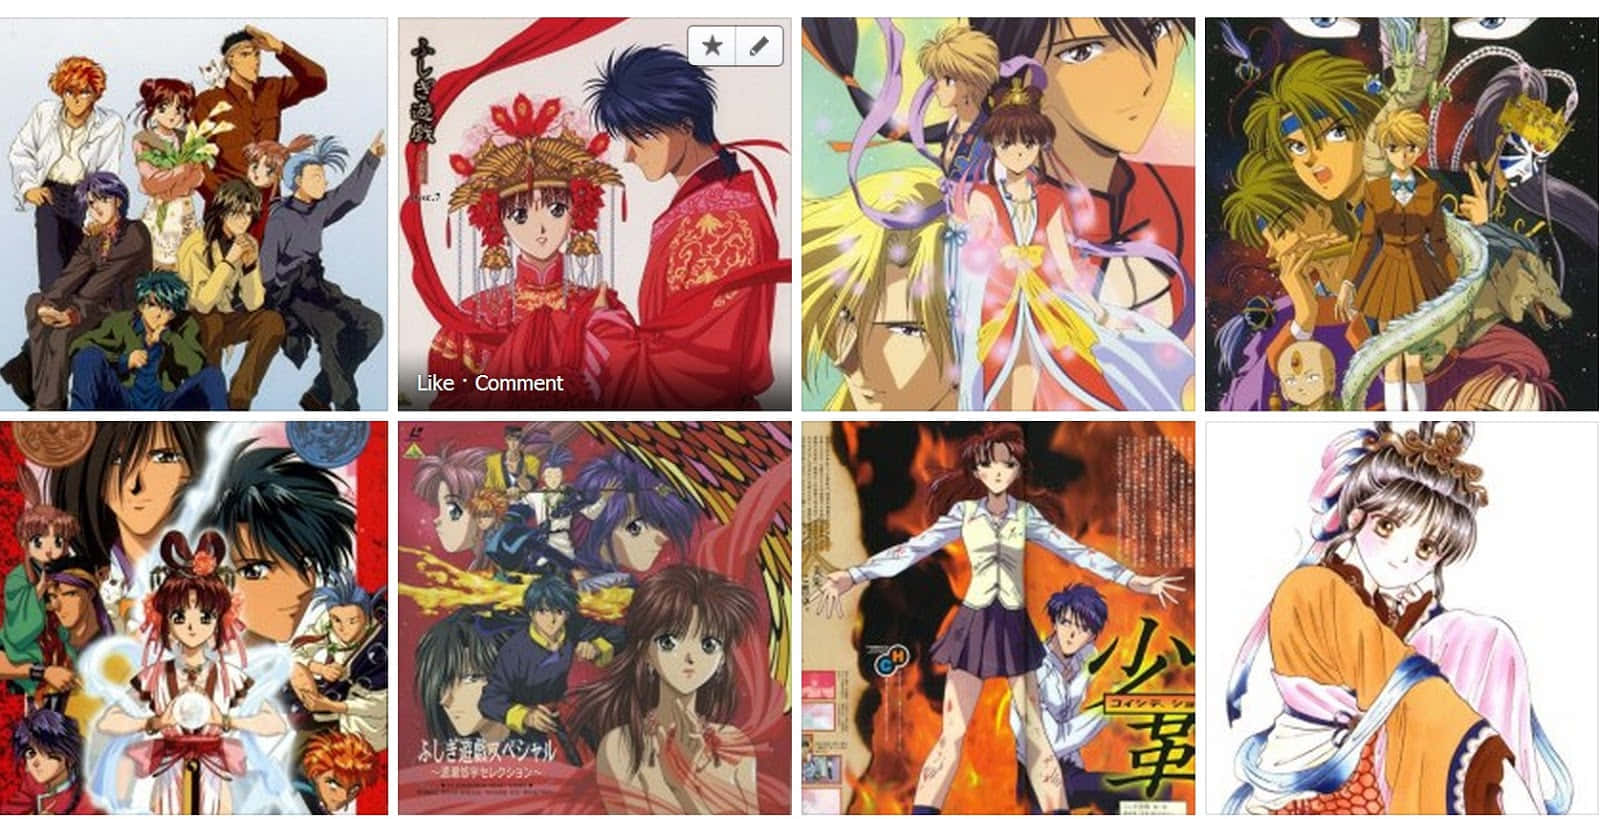 Einecollage Von Anime-charakteren In Verschiedenen Posen.